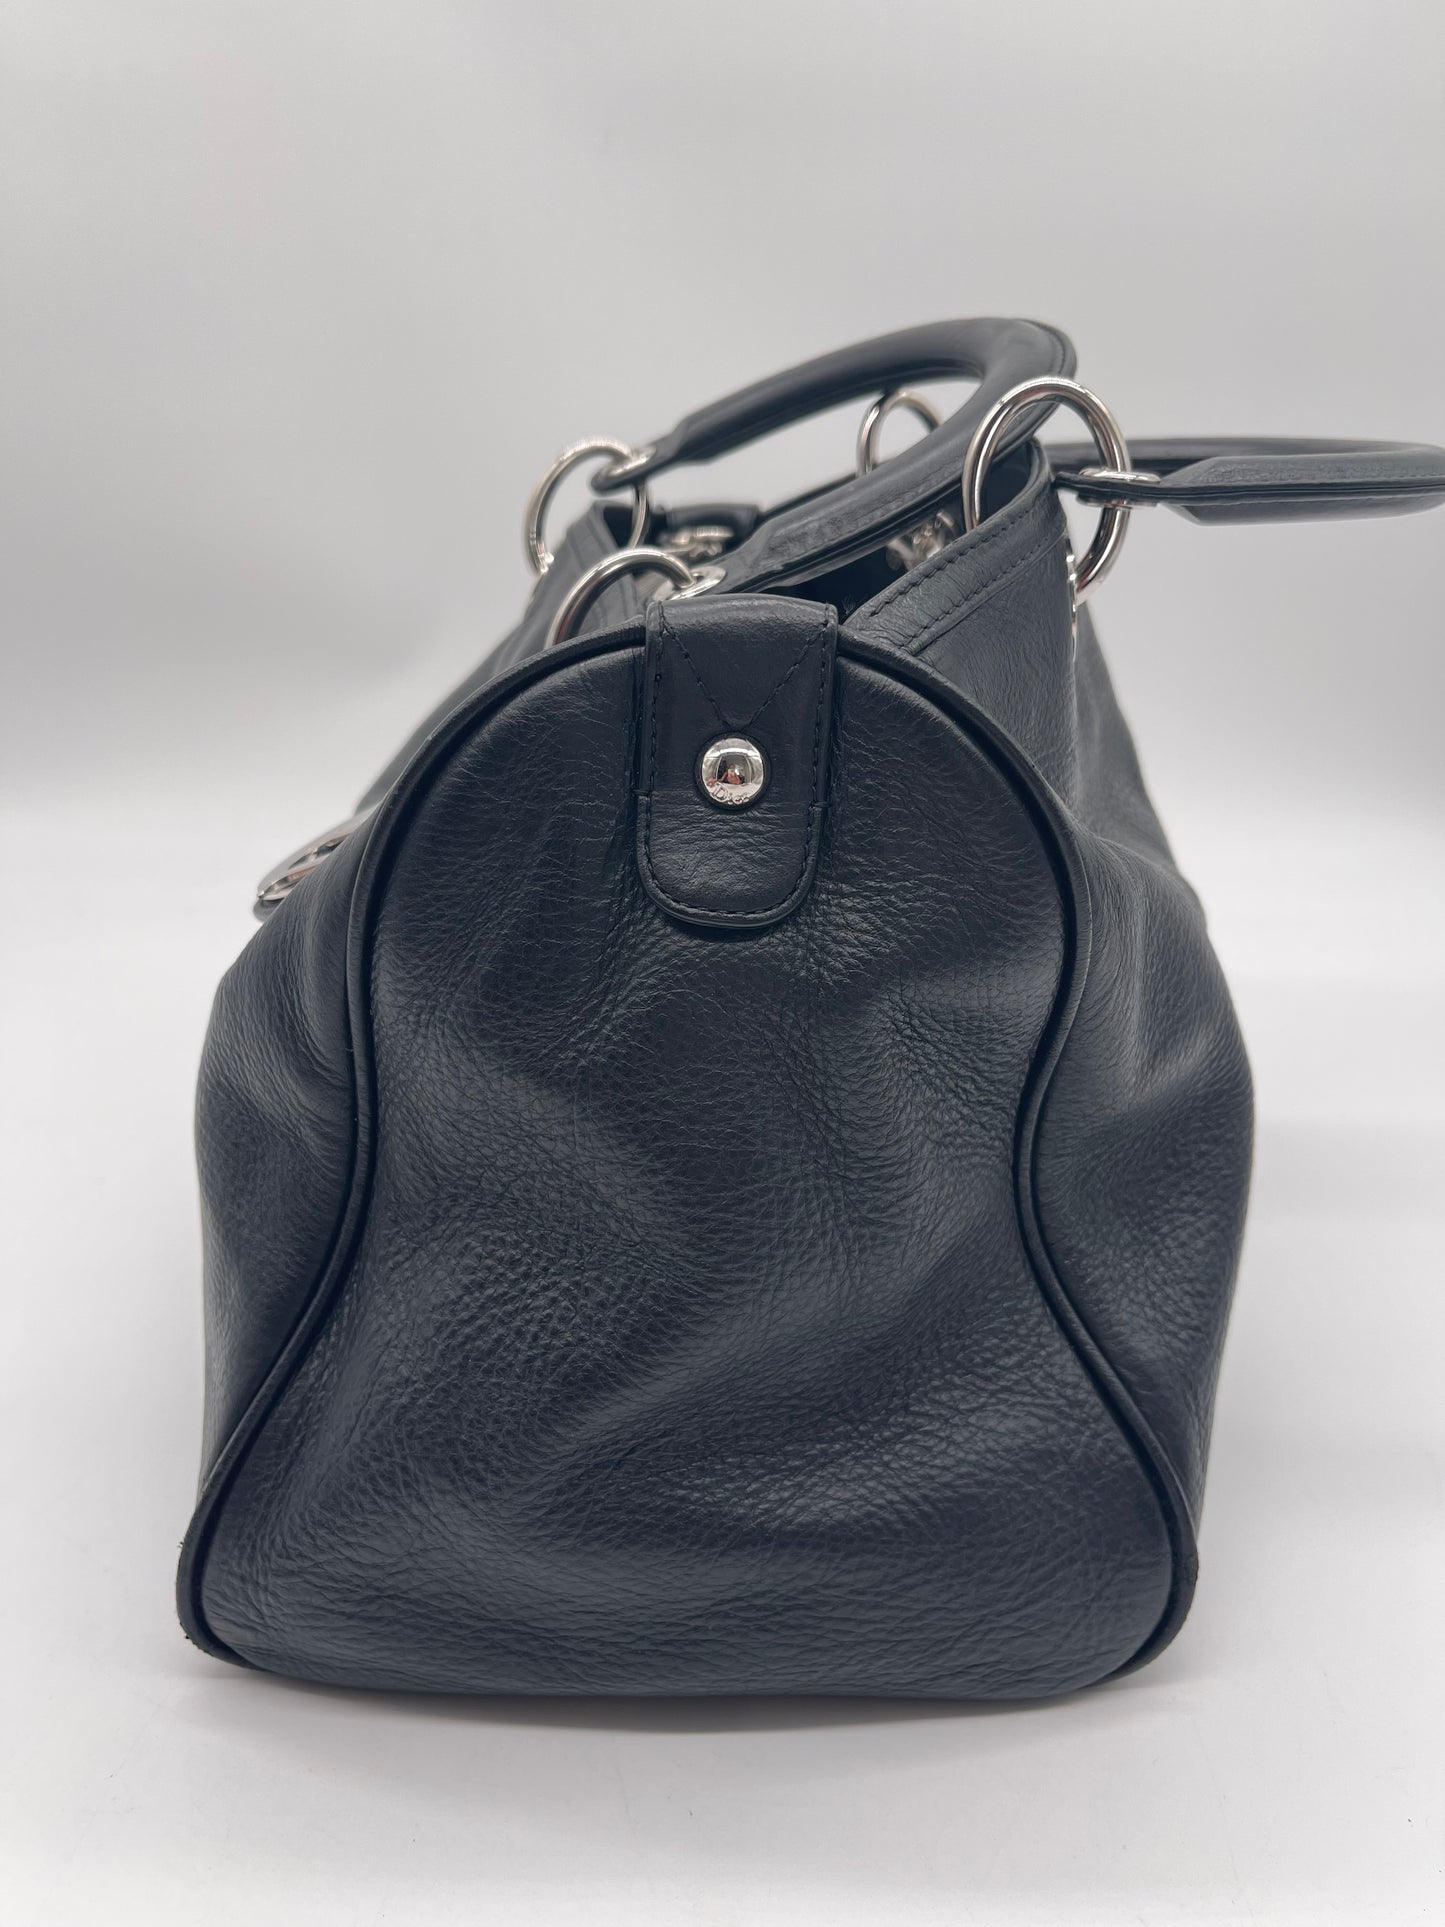 Dior Diorissimo handbag